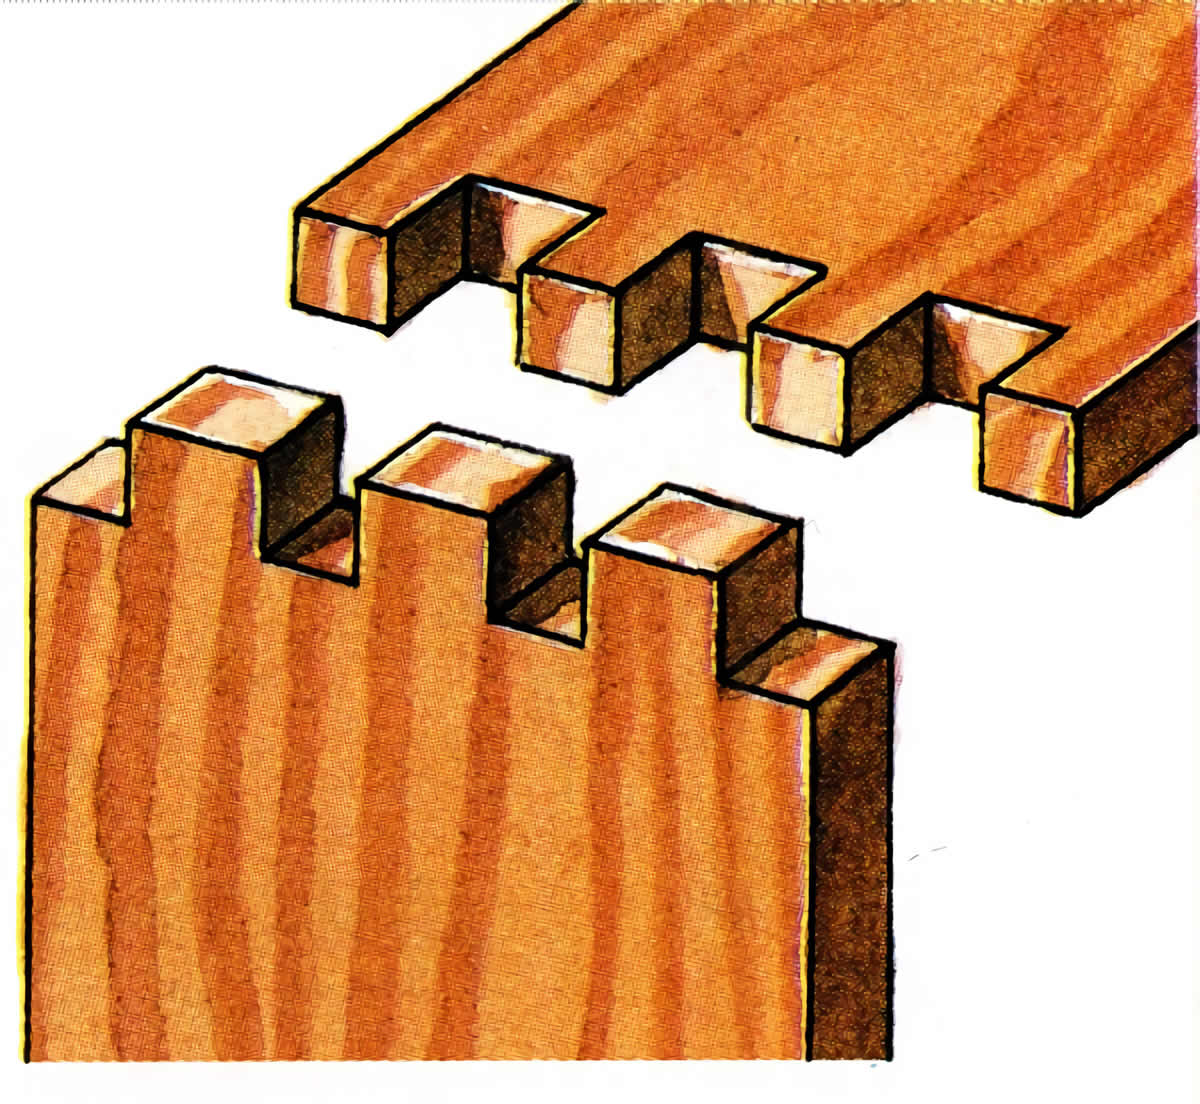 Tipos de uniones para muebles de madera - Esmihobby